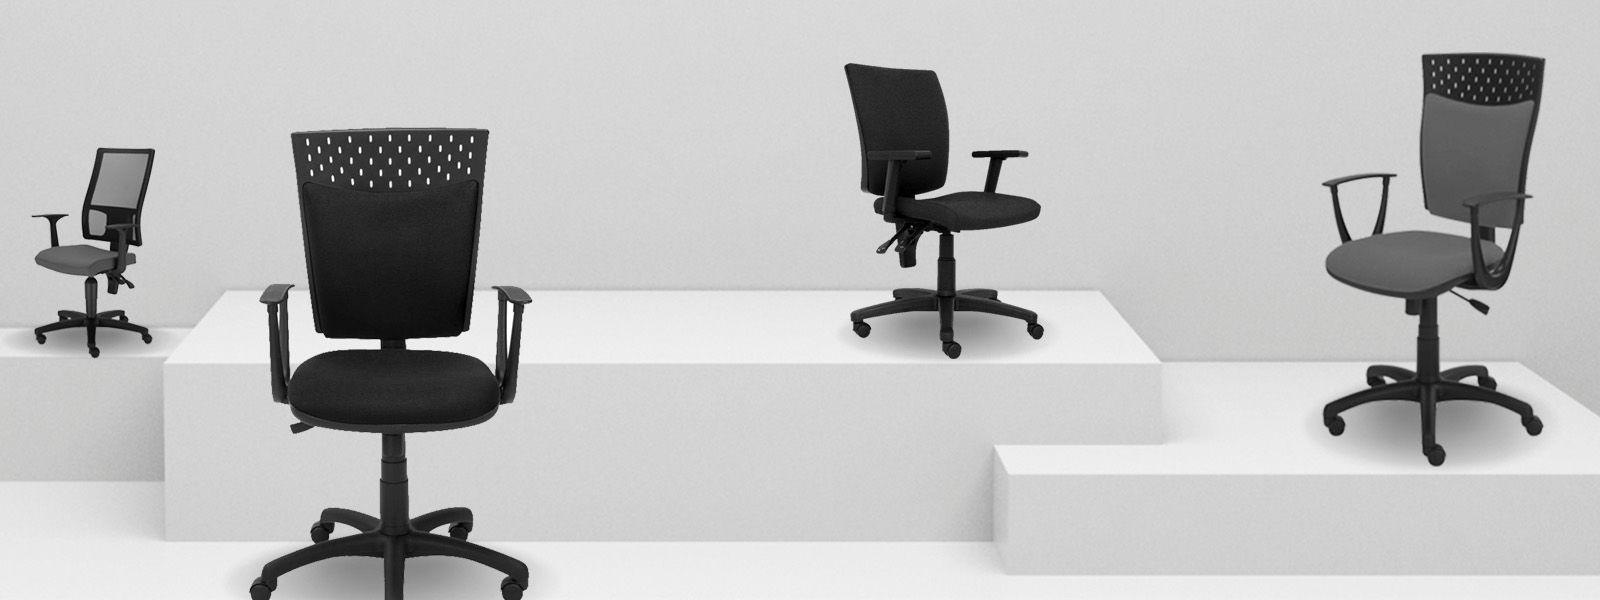 4 modele krzeseł biurowych idealnych do ergonomicznej pracy w biurze. 